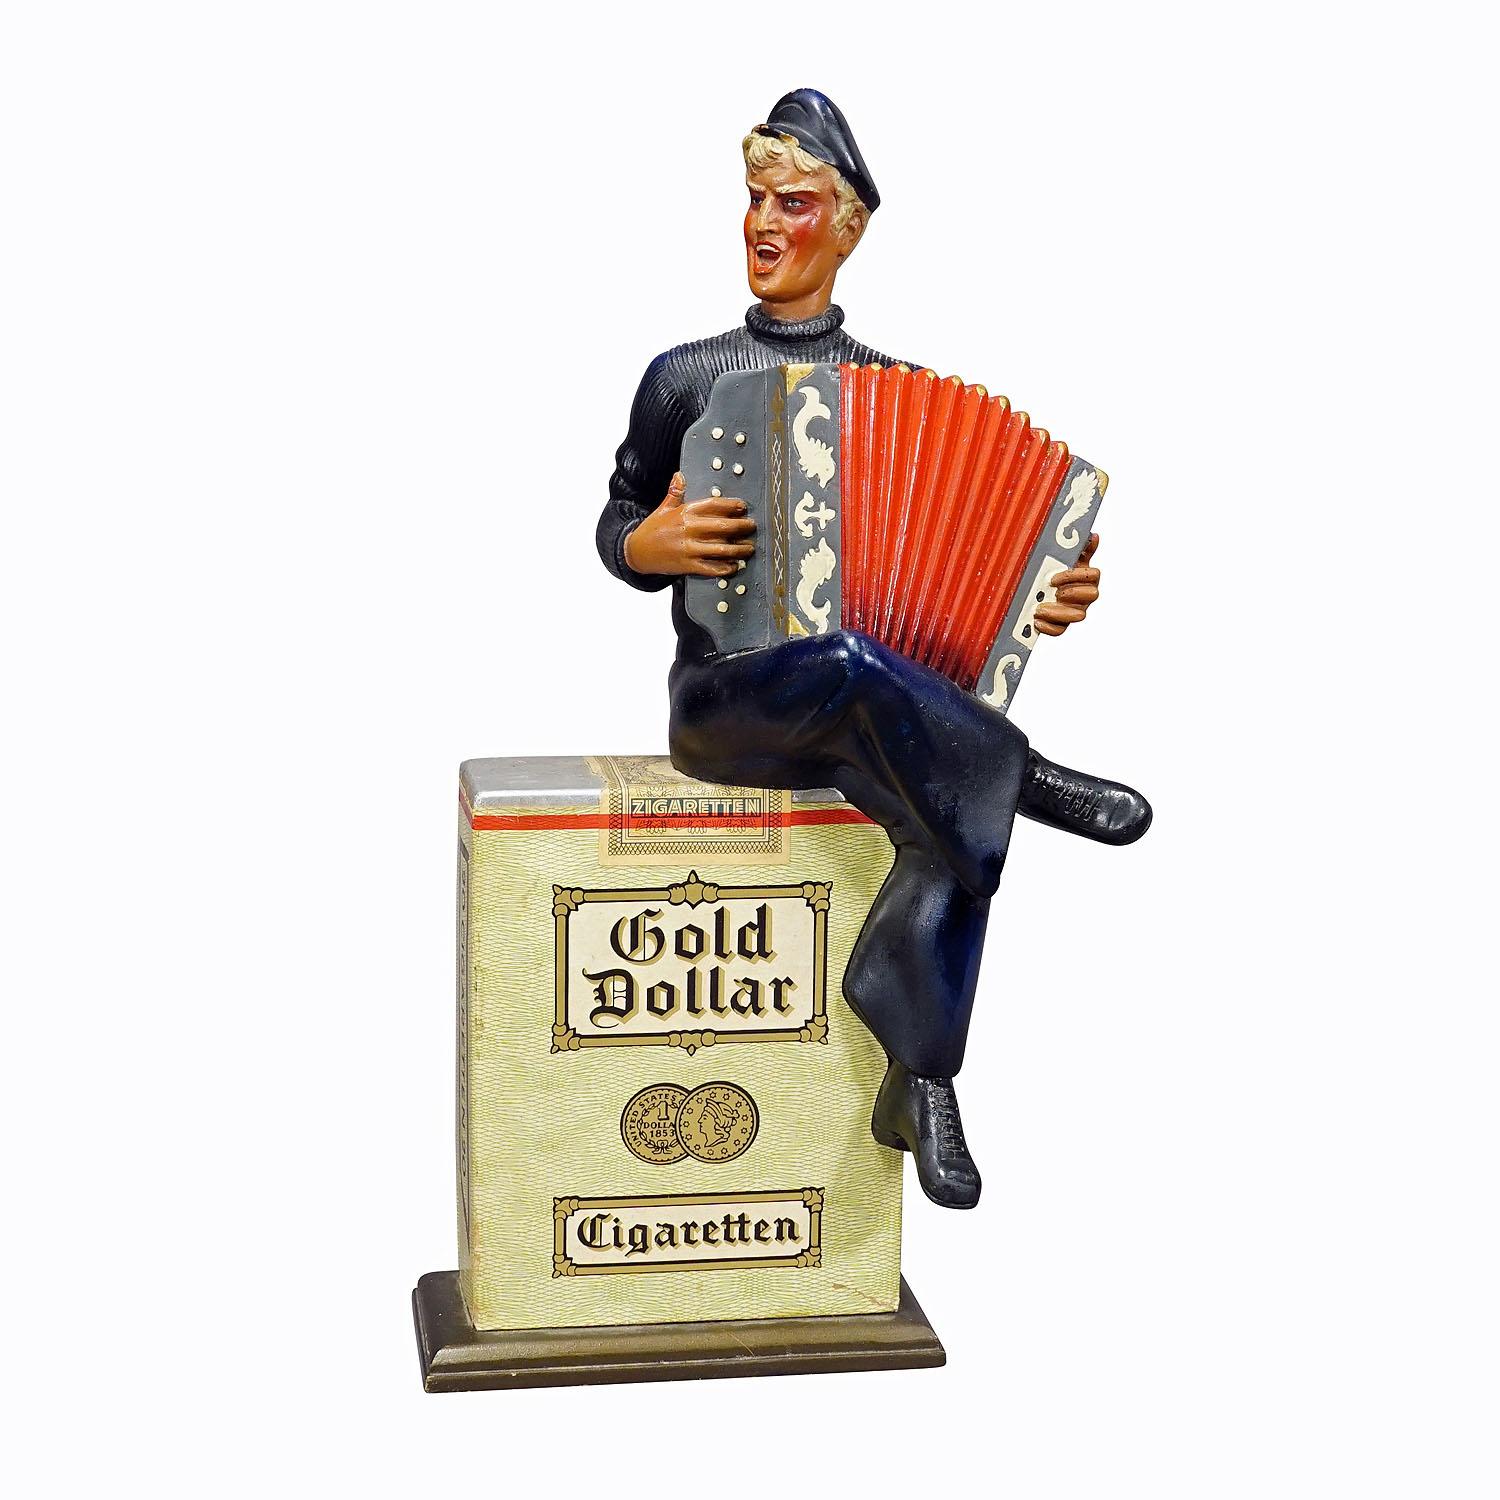 Werbe-Skulptur aus Gold-Dollar-Zigaretten im Vintage-Stil, 1950er Jahre

Diese alte BAT (British American Tobacco) Werbefigur aus Holz und Gips für die Zigarettenmarke 